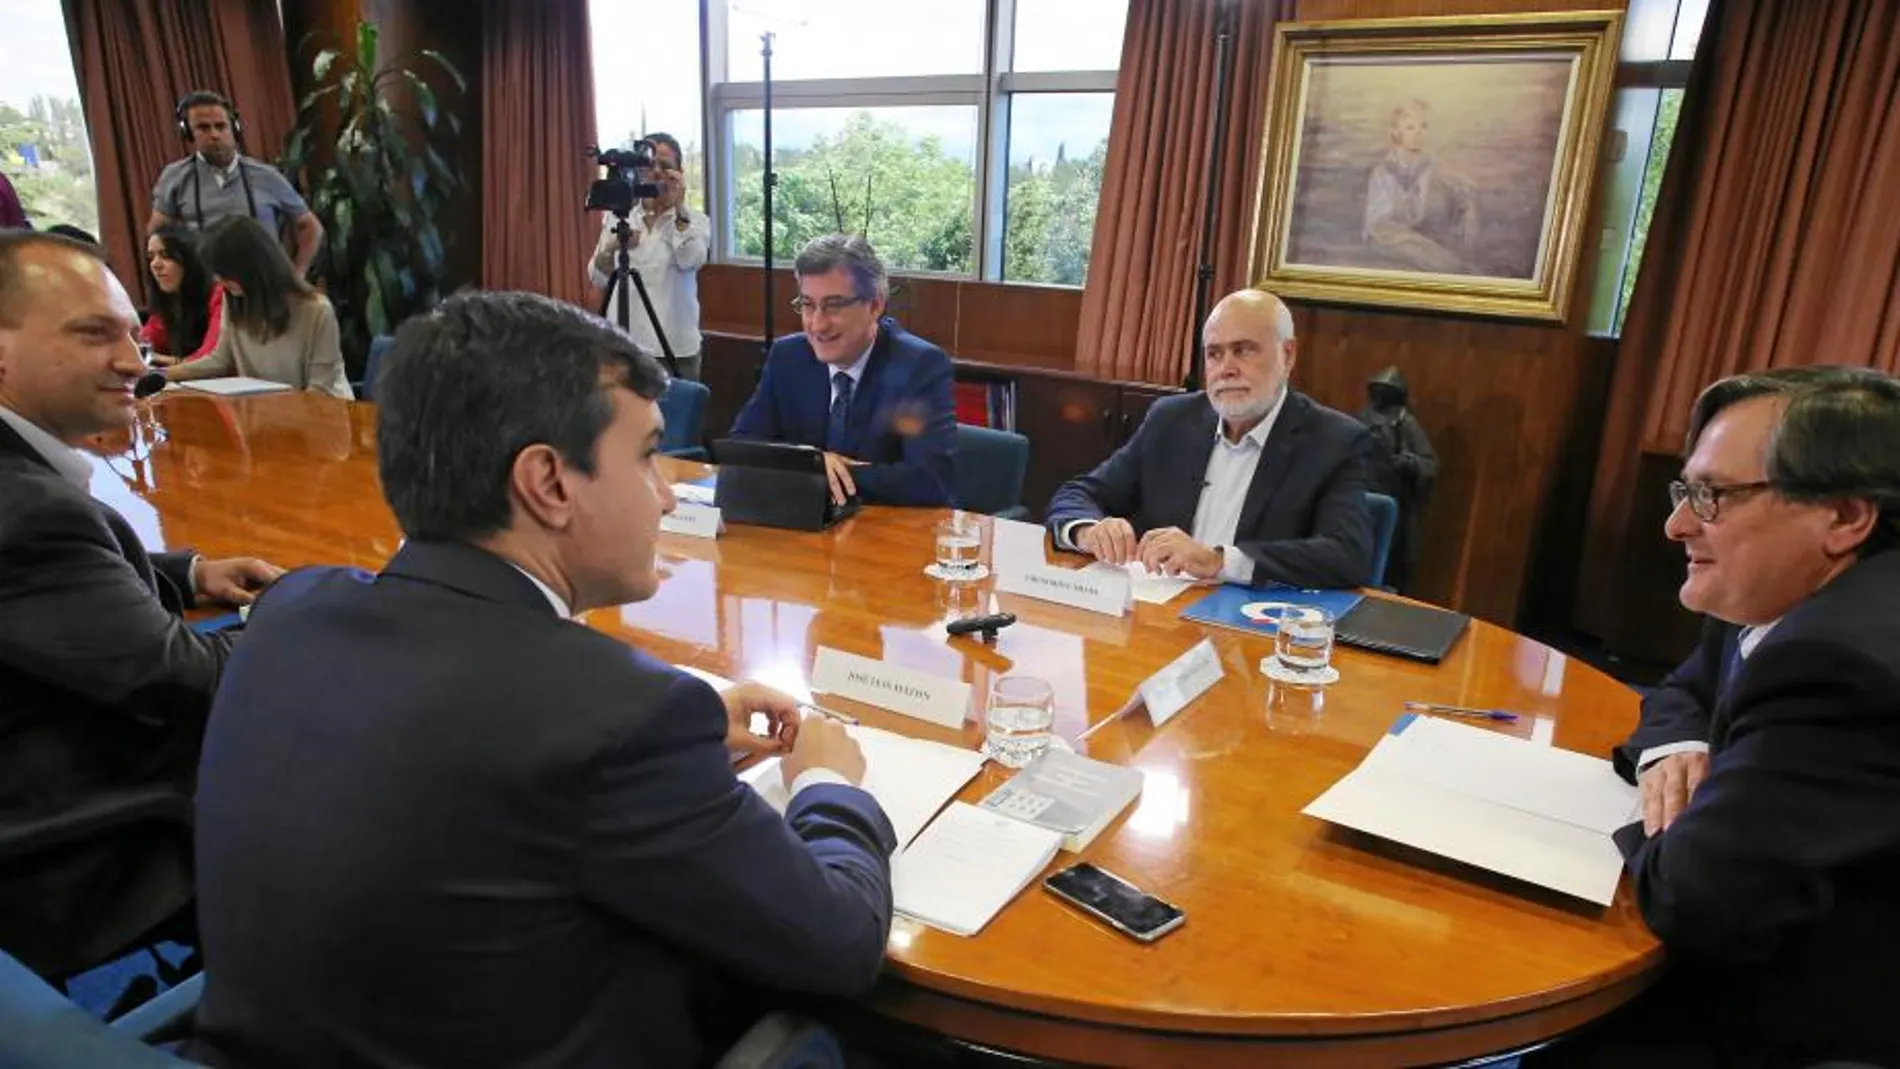 Rubén Martínez Dalmau (Podemos), José Luis Ayllón (PP), el director de LA RAZÓN, Francisco Marhuenda, Gregorio Cámara (PSOE) e Ignacio Prendes (C’s), ayer durante el debate